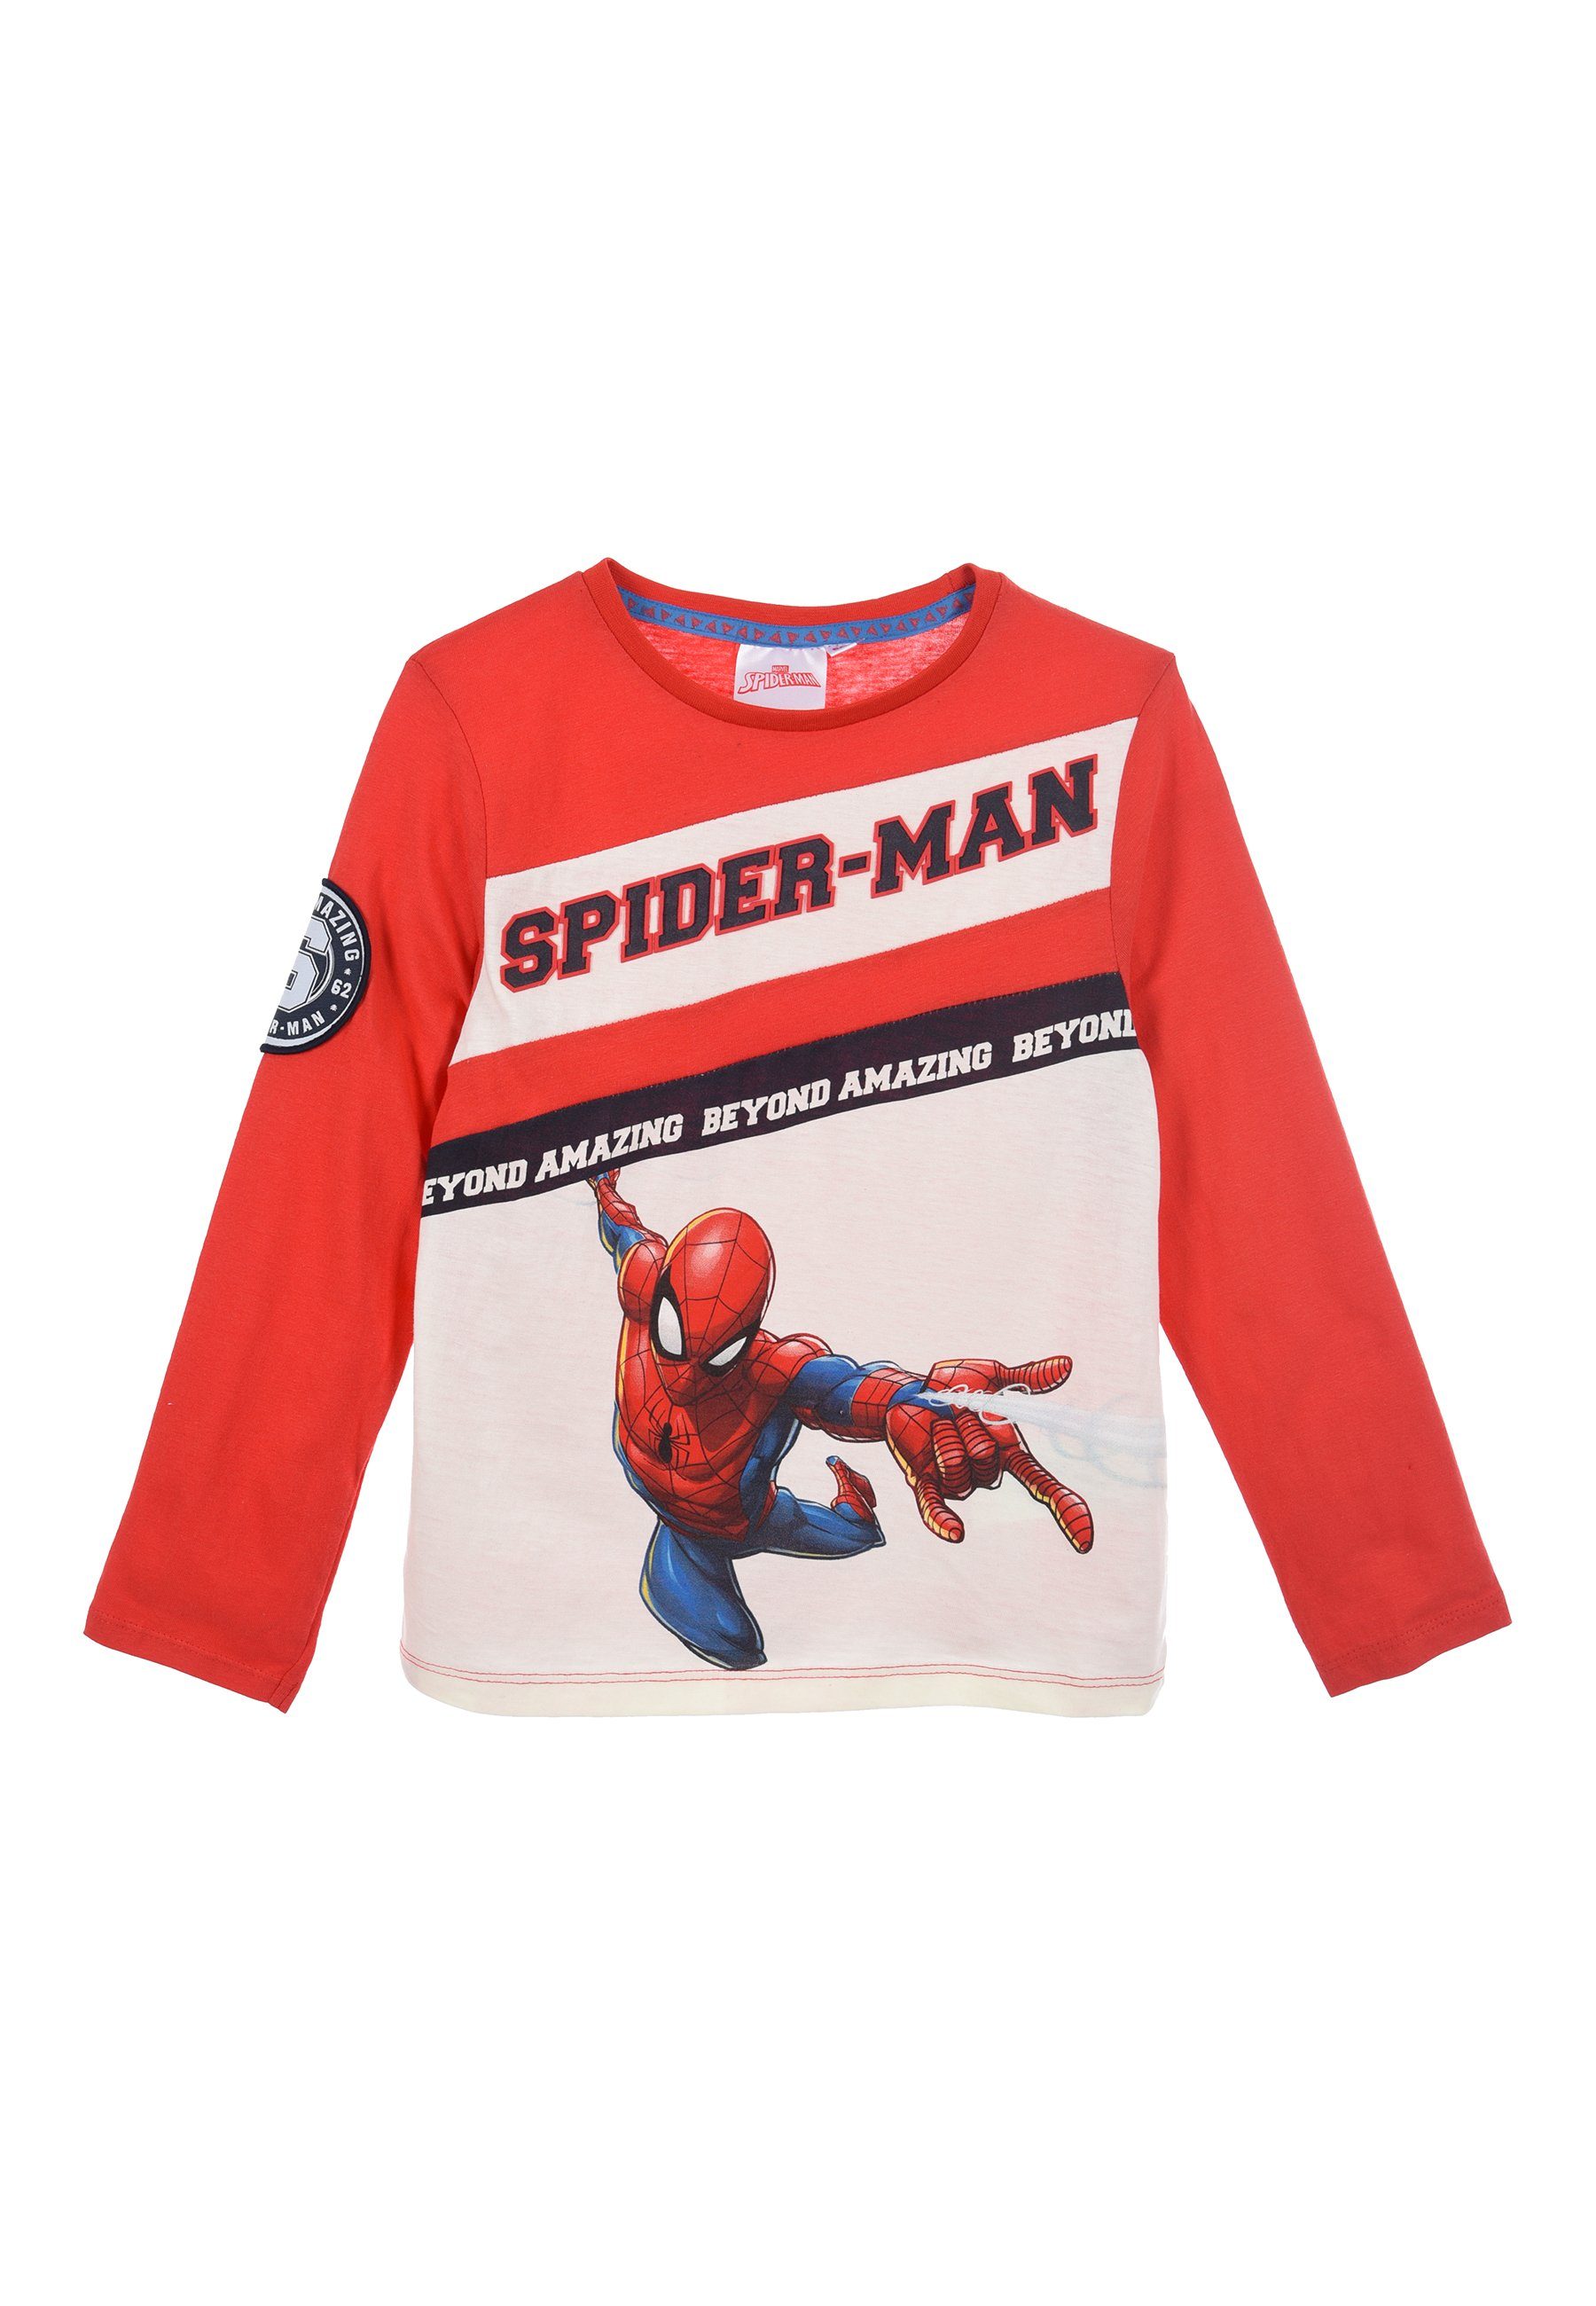 Top-Stadt Spiderman Langarmshirt Kinder Jungen Longsleeve haben Durch ein Ihre angenehmes die T-Shirt, Baumwolle Kleinen verwendete Langarm